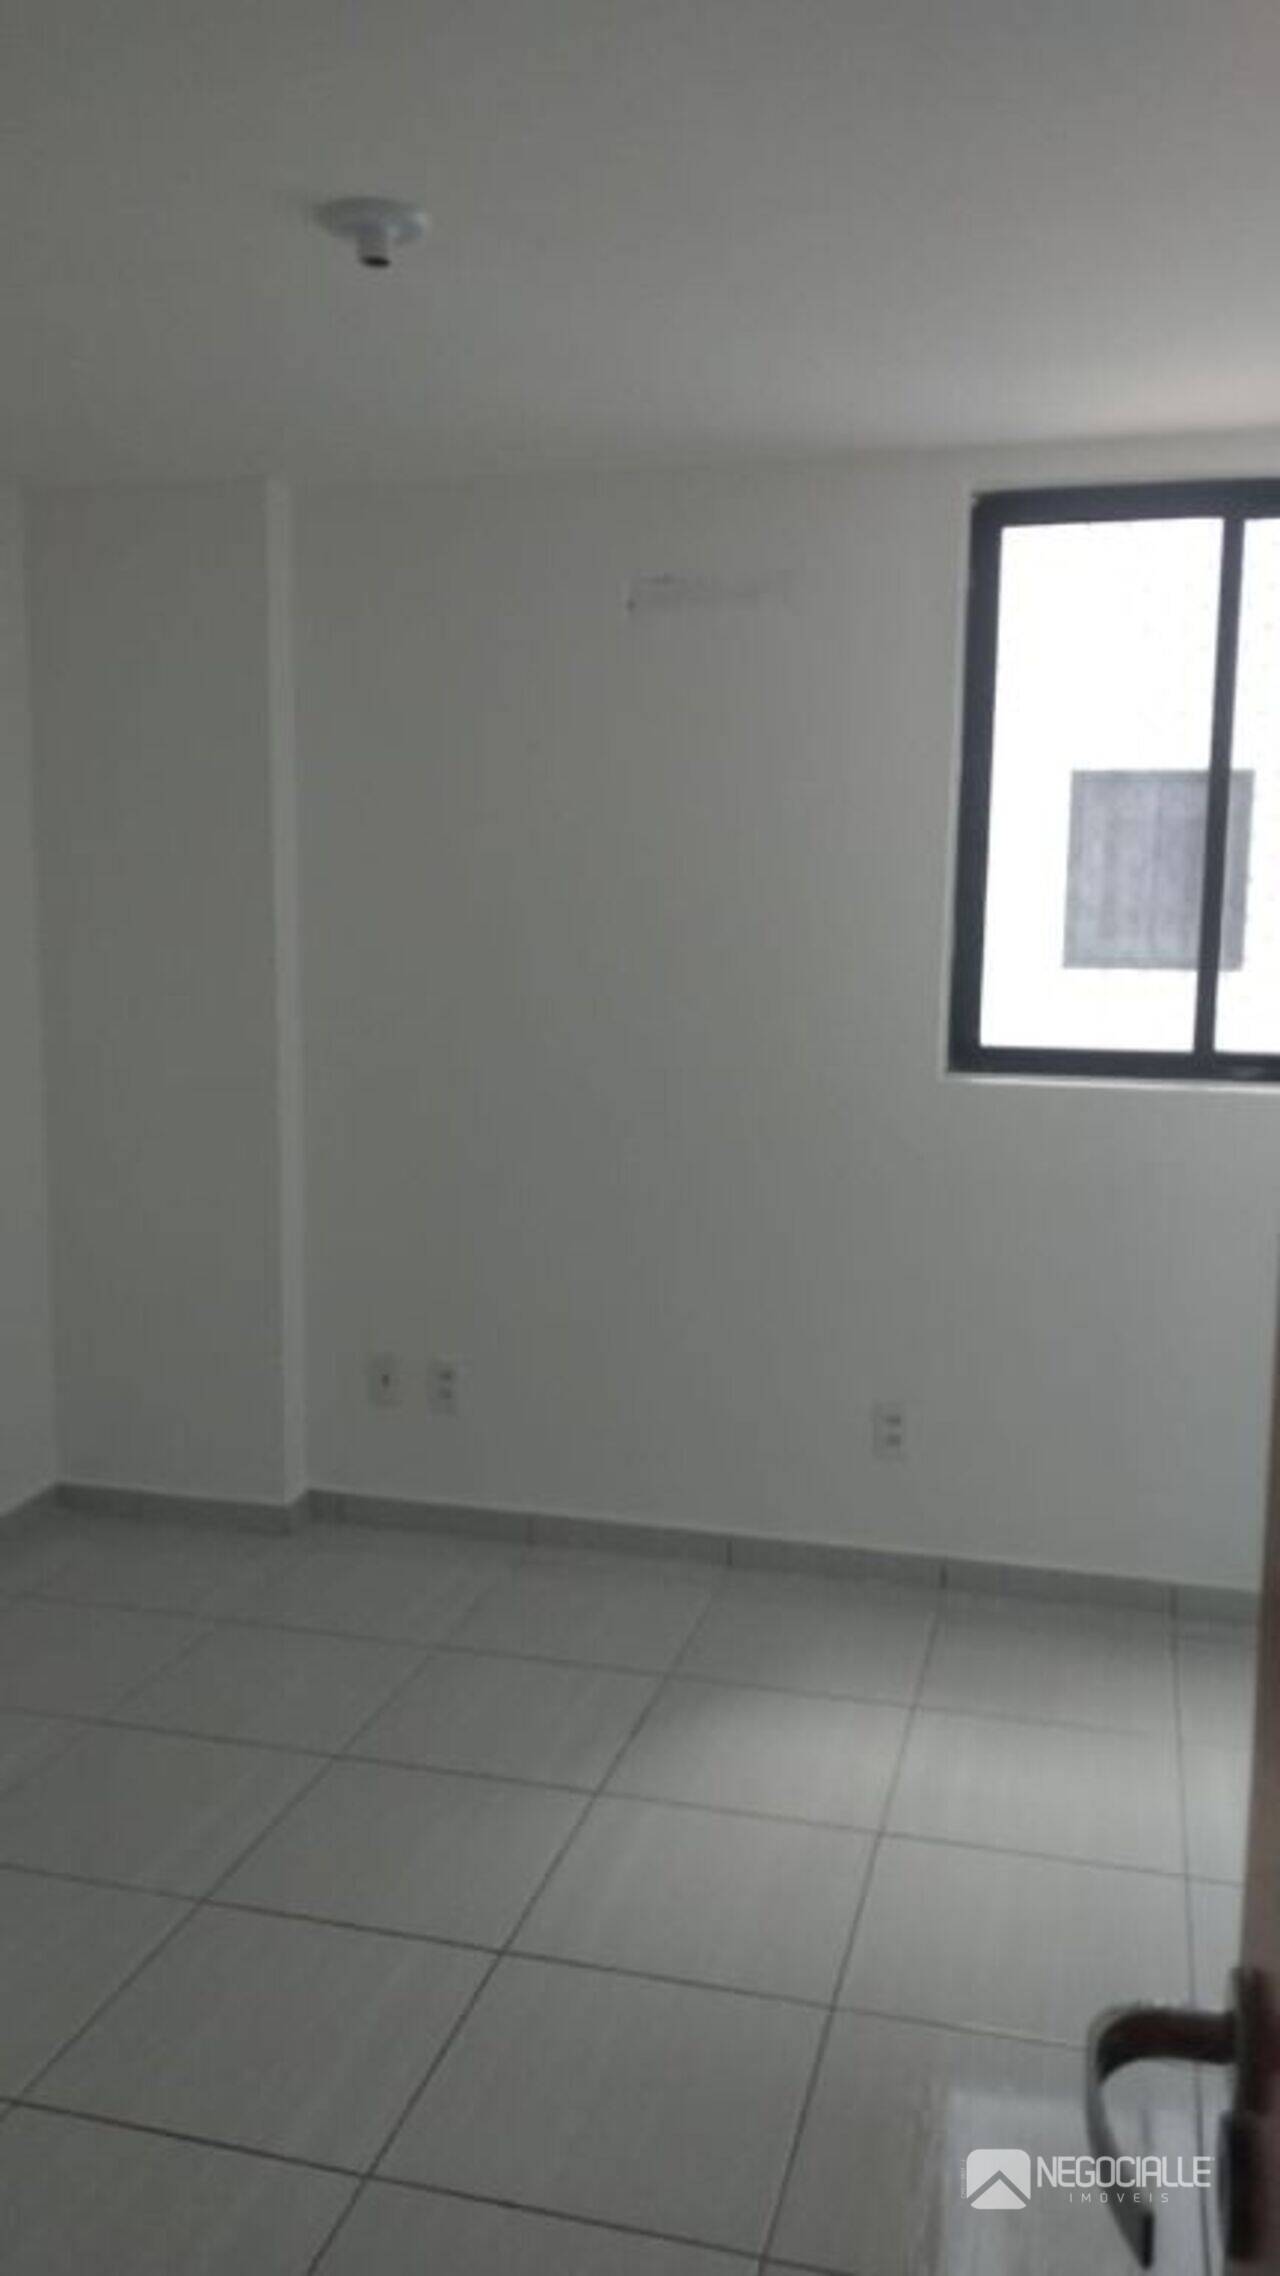 Apartamento Cruzeiro, Campina Grande - PB